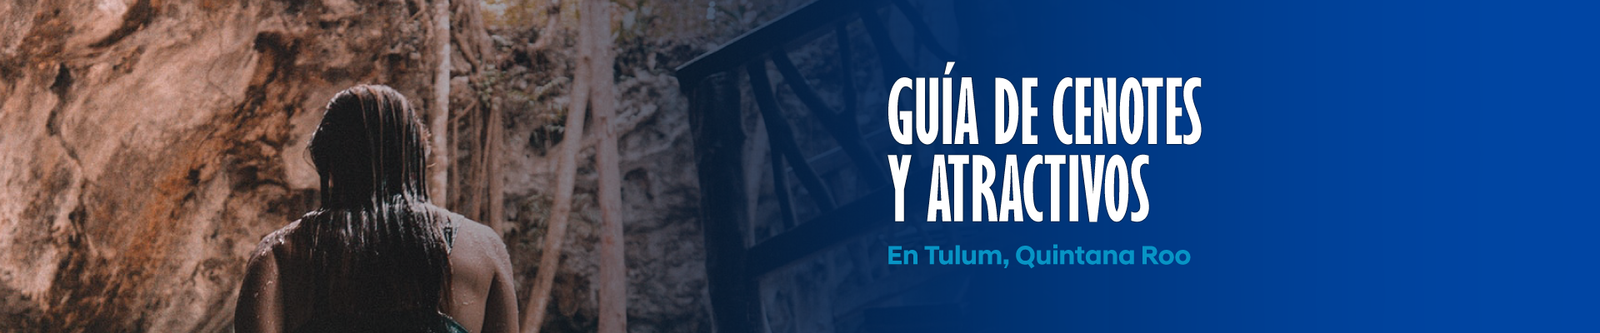 Guía gratuita de cenotes y atractivos en Tulum, Quintana Roo